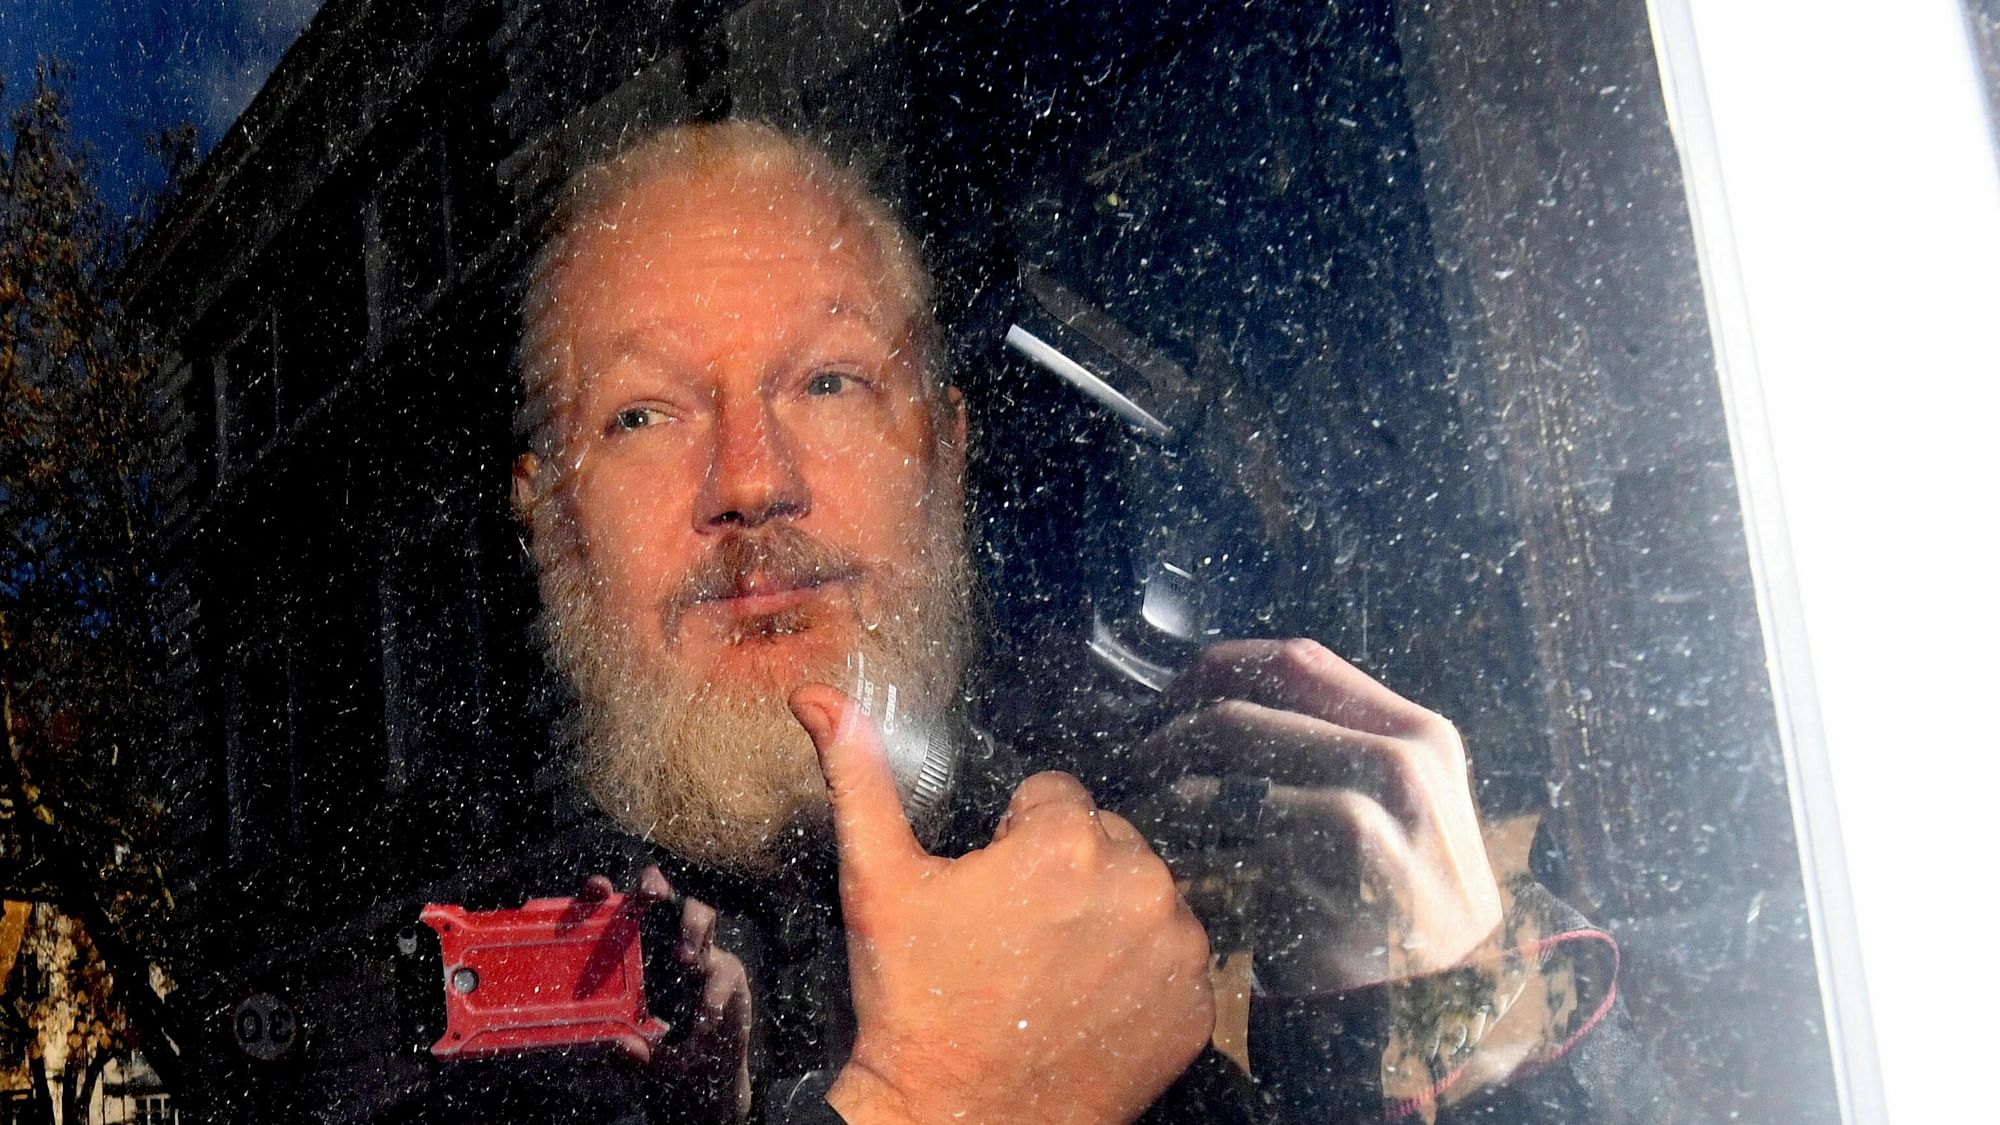 File photo of Julian Assange.